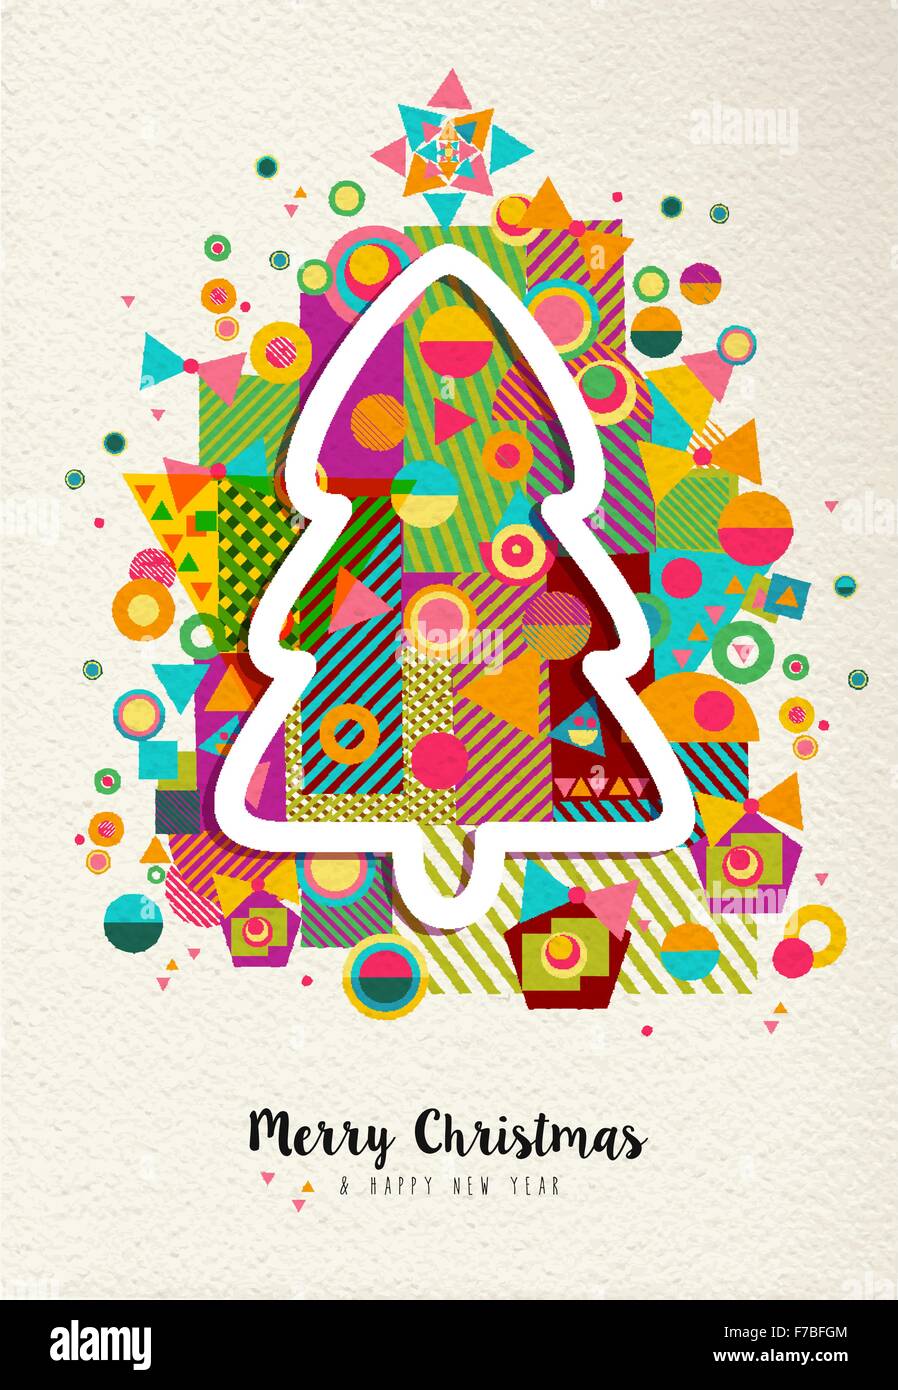 Joyeux Noël Bonne année avec des formes amusantes et géométrie colorée pin noël contour. Idéal pour la saison de vacances Illustration de Vecteur